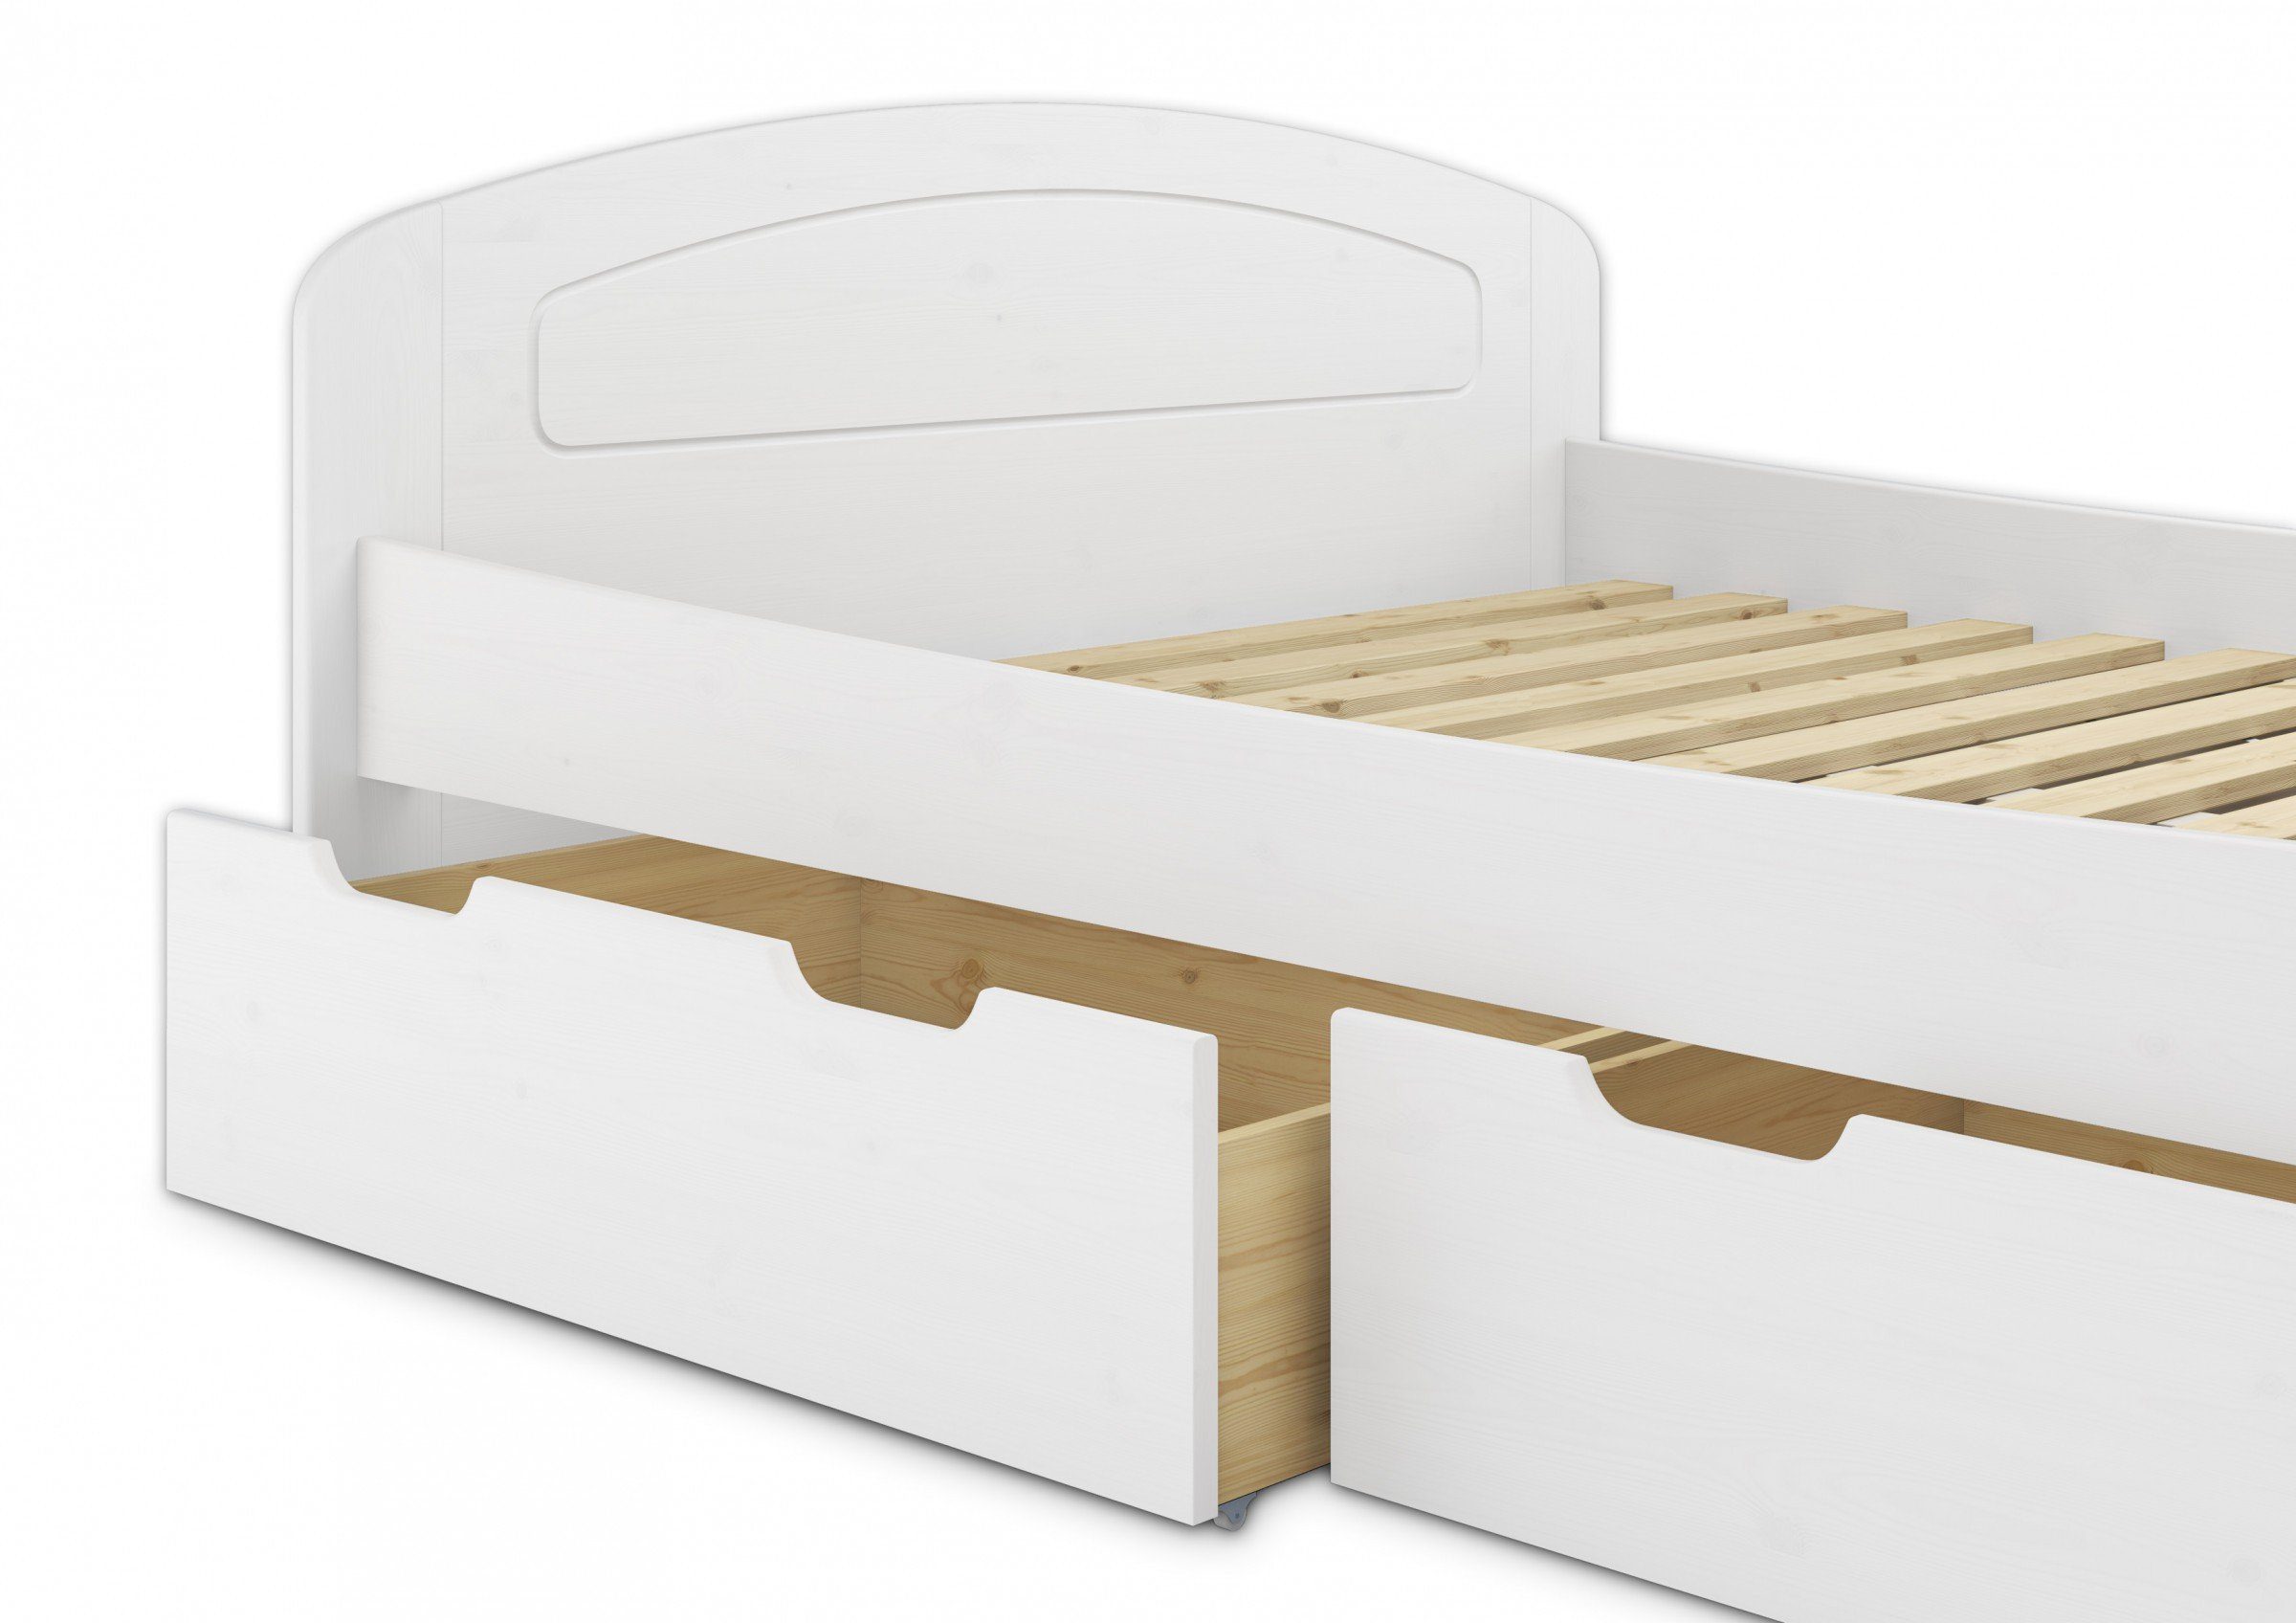 Kiefer weiß 200x200 mit Kieferwaschweiß Doppelbett Bett Matratzen, Rollrosten + ERST-HOLZ